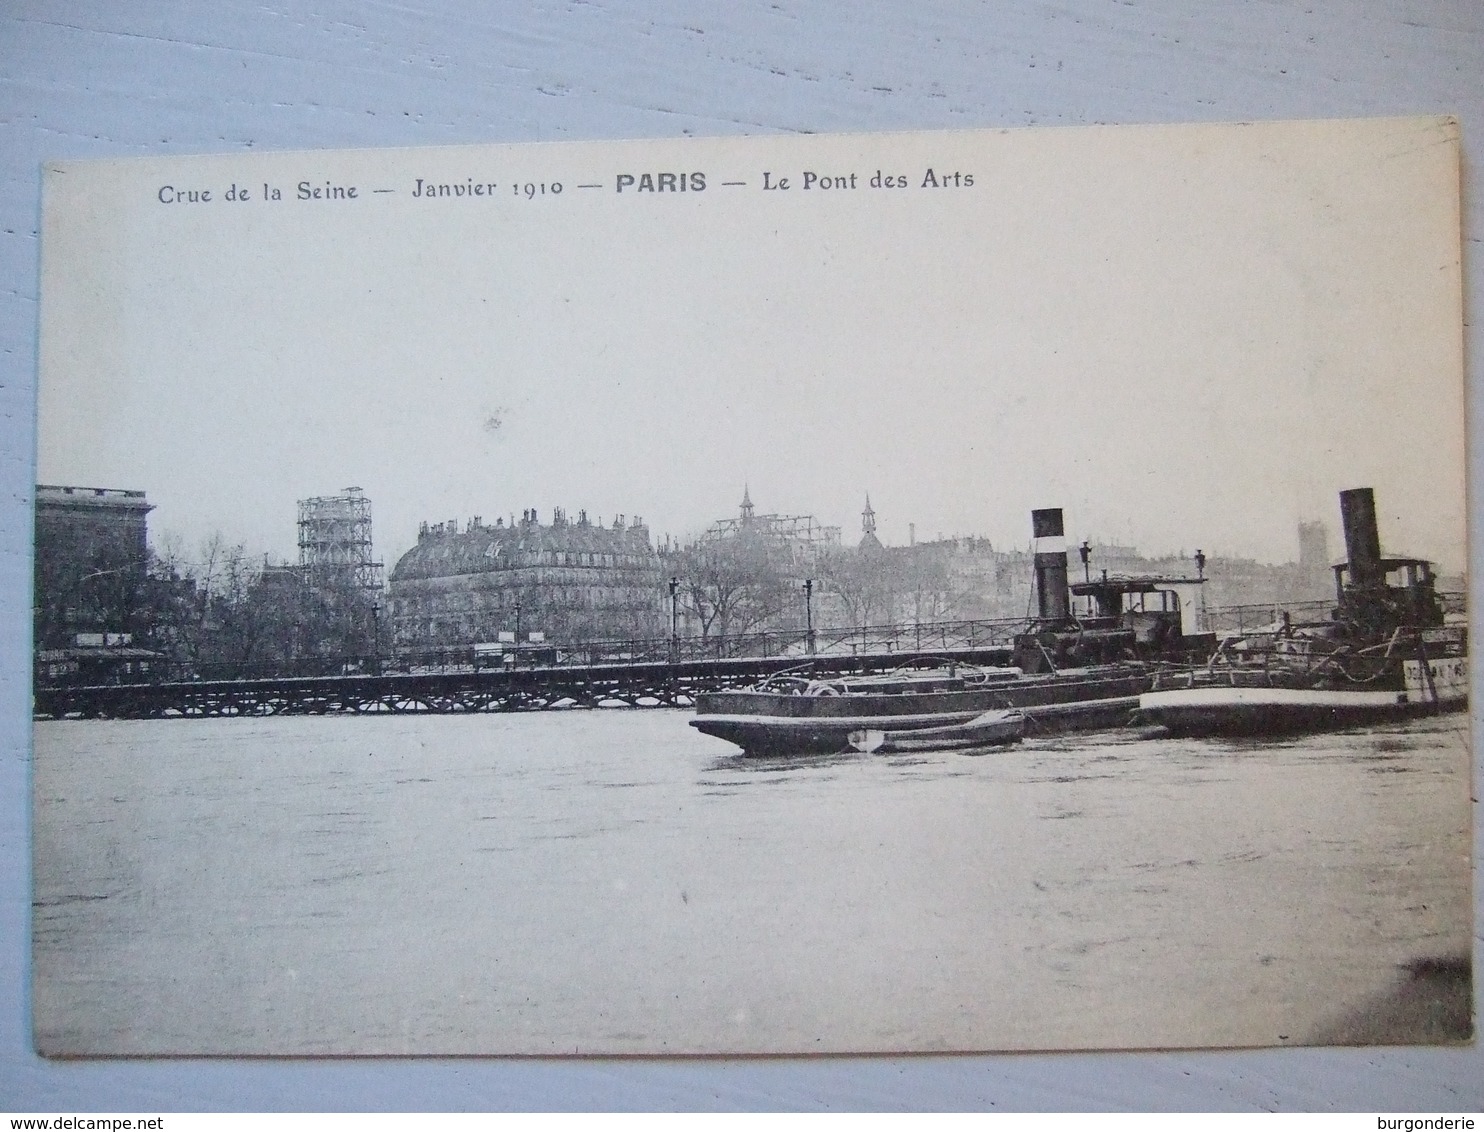 PARIS / CRUE DE LA SEINE / LE PONT DES ARTS / JOLIE CARTE ANIMEE (BATEAUX) - Paris Flood, 1910